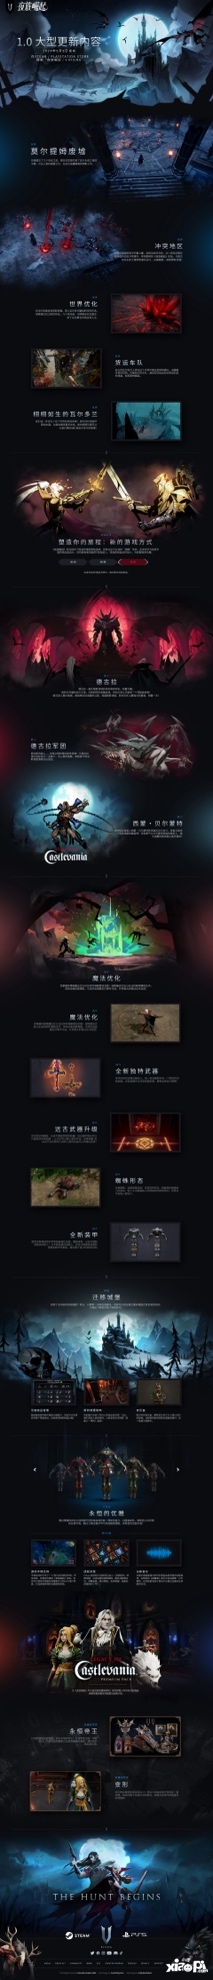 吸血鬼主题生存游戏夜族崛起发布全新区域首个实机预告片：“莫尔提姆废墟”